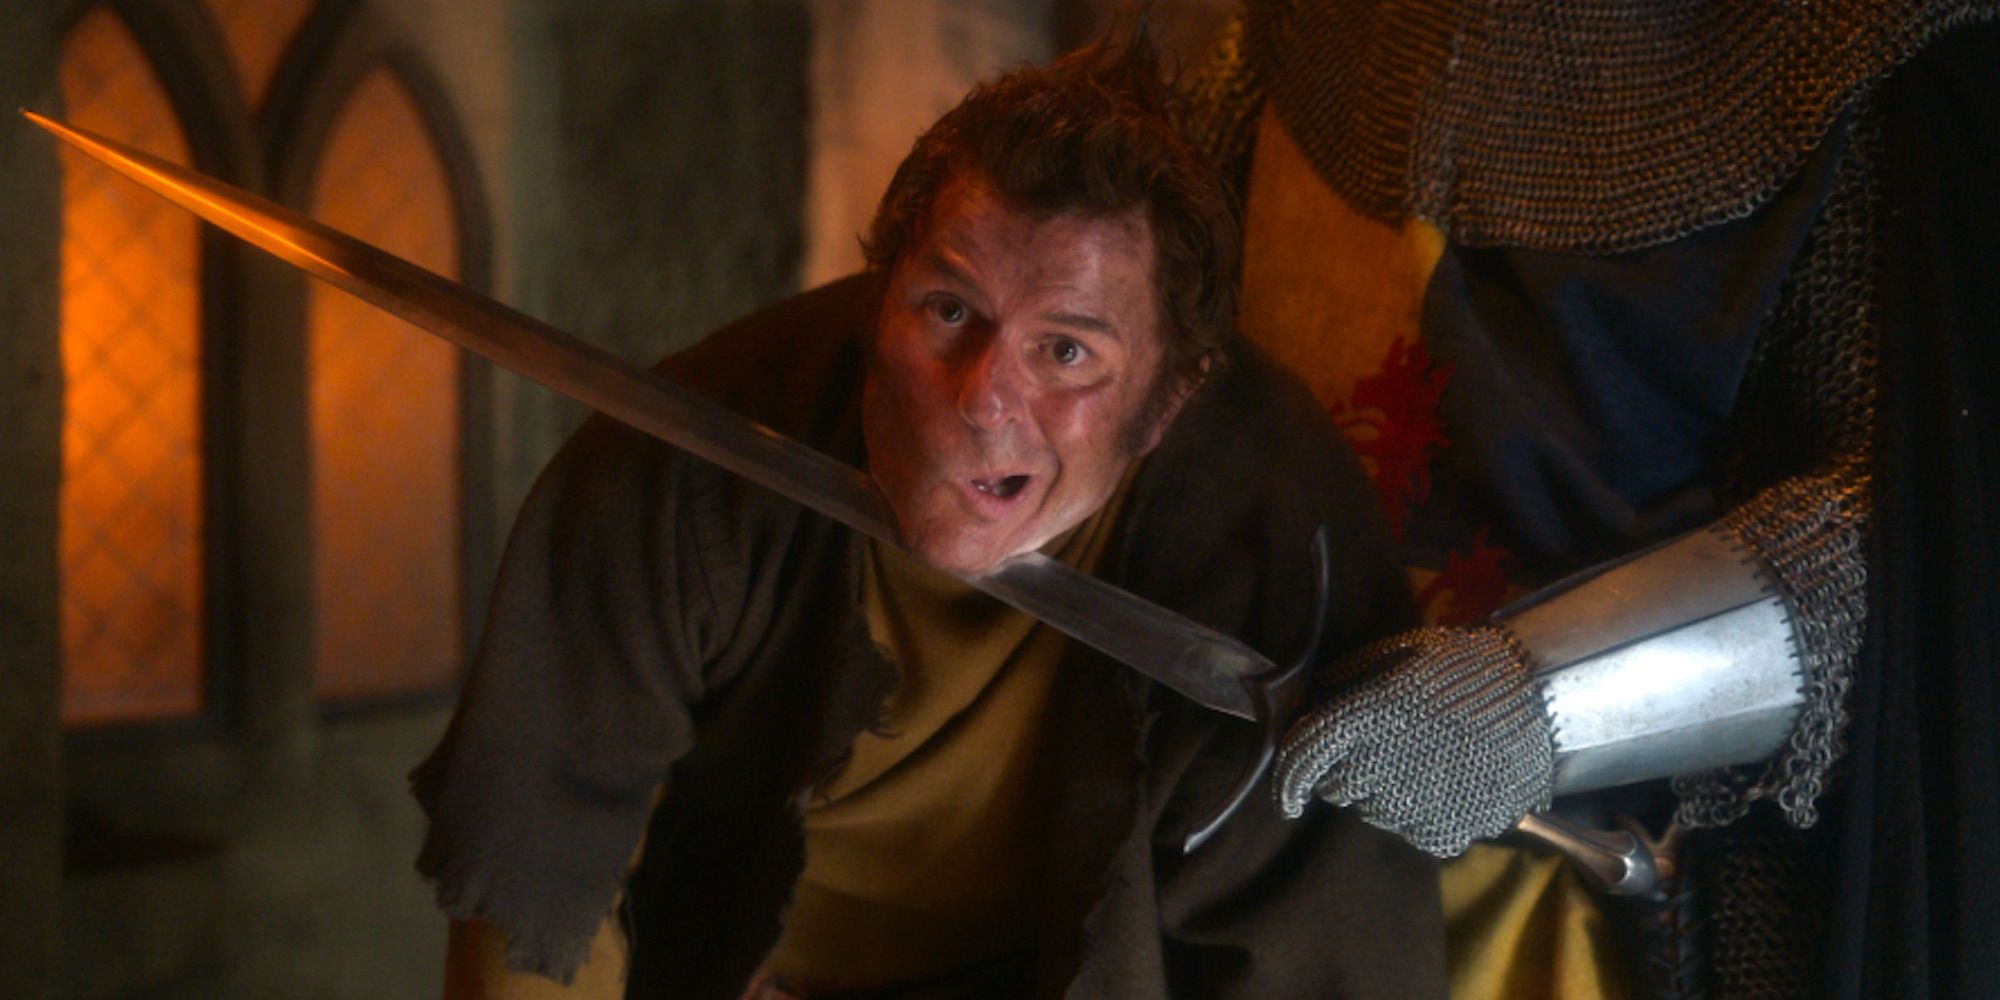 Quasi Review: Quasimodo Meets Super Troopers In This Wild Period Piece